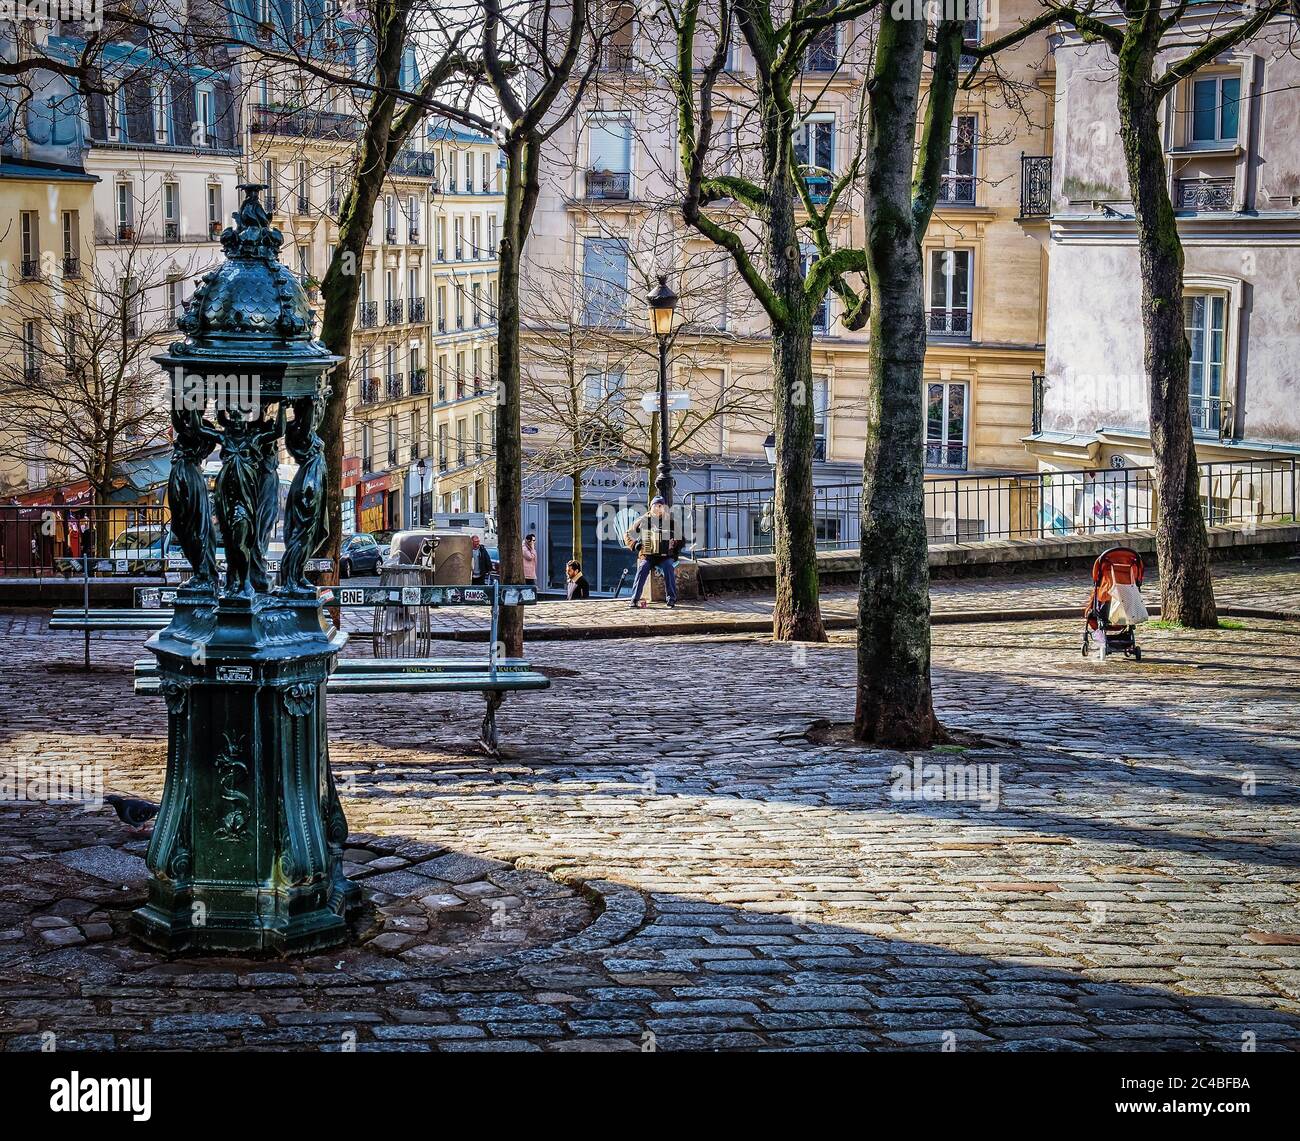 Paris, France, février 2020, vue sur une fontaine Wallace sur la place Emile-Goudeau au coeur du quartier de Montmartre Banque D'Images